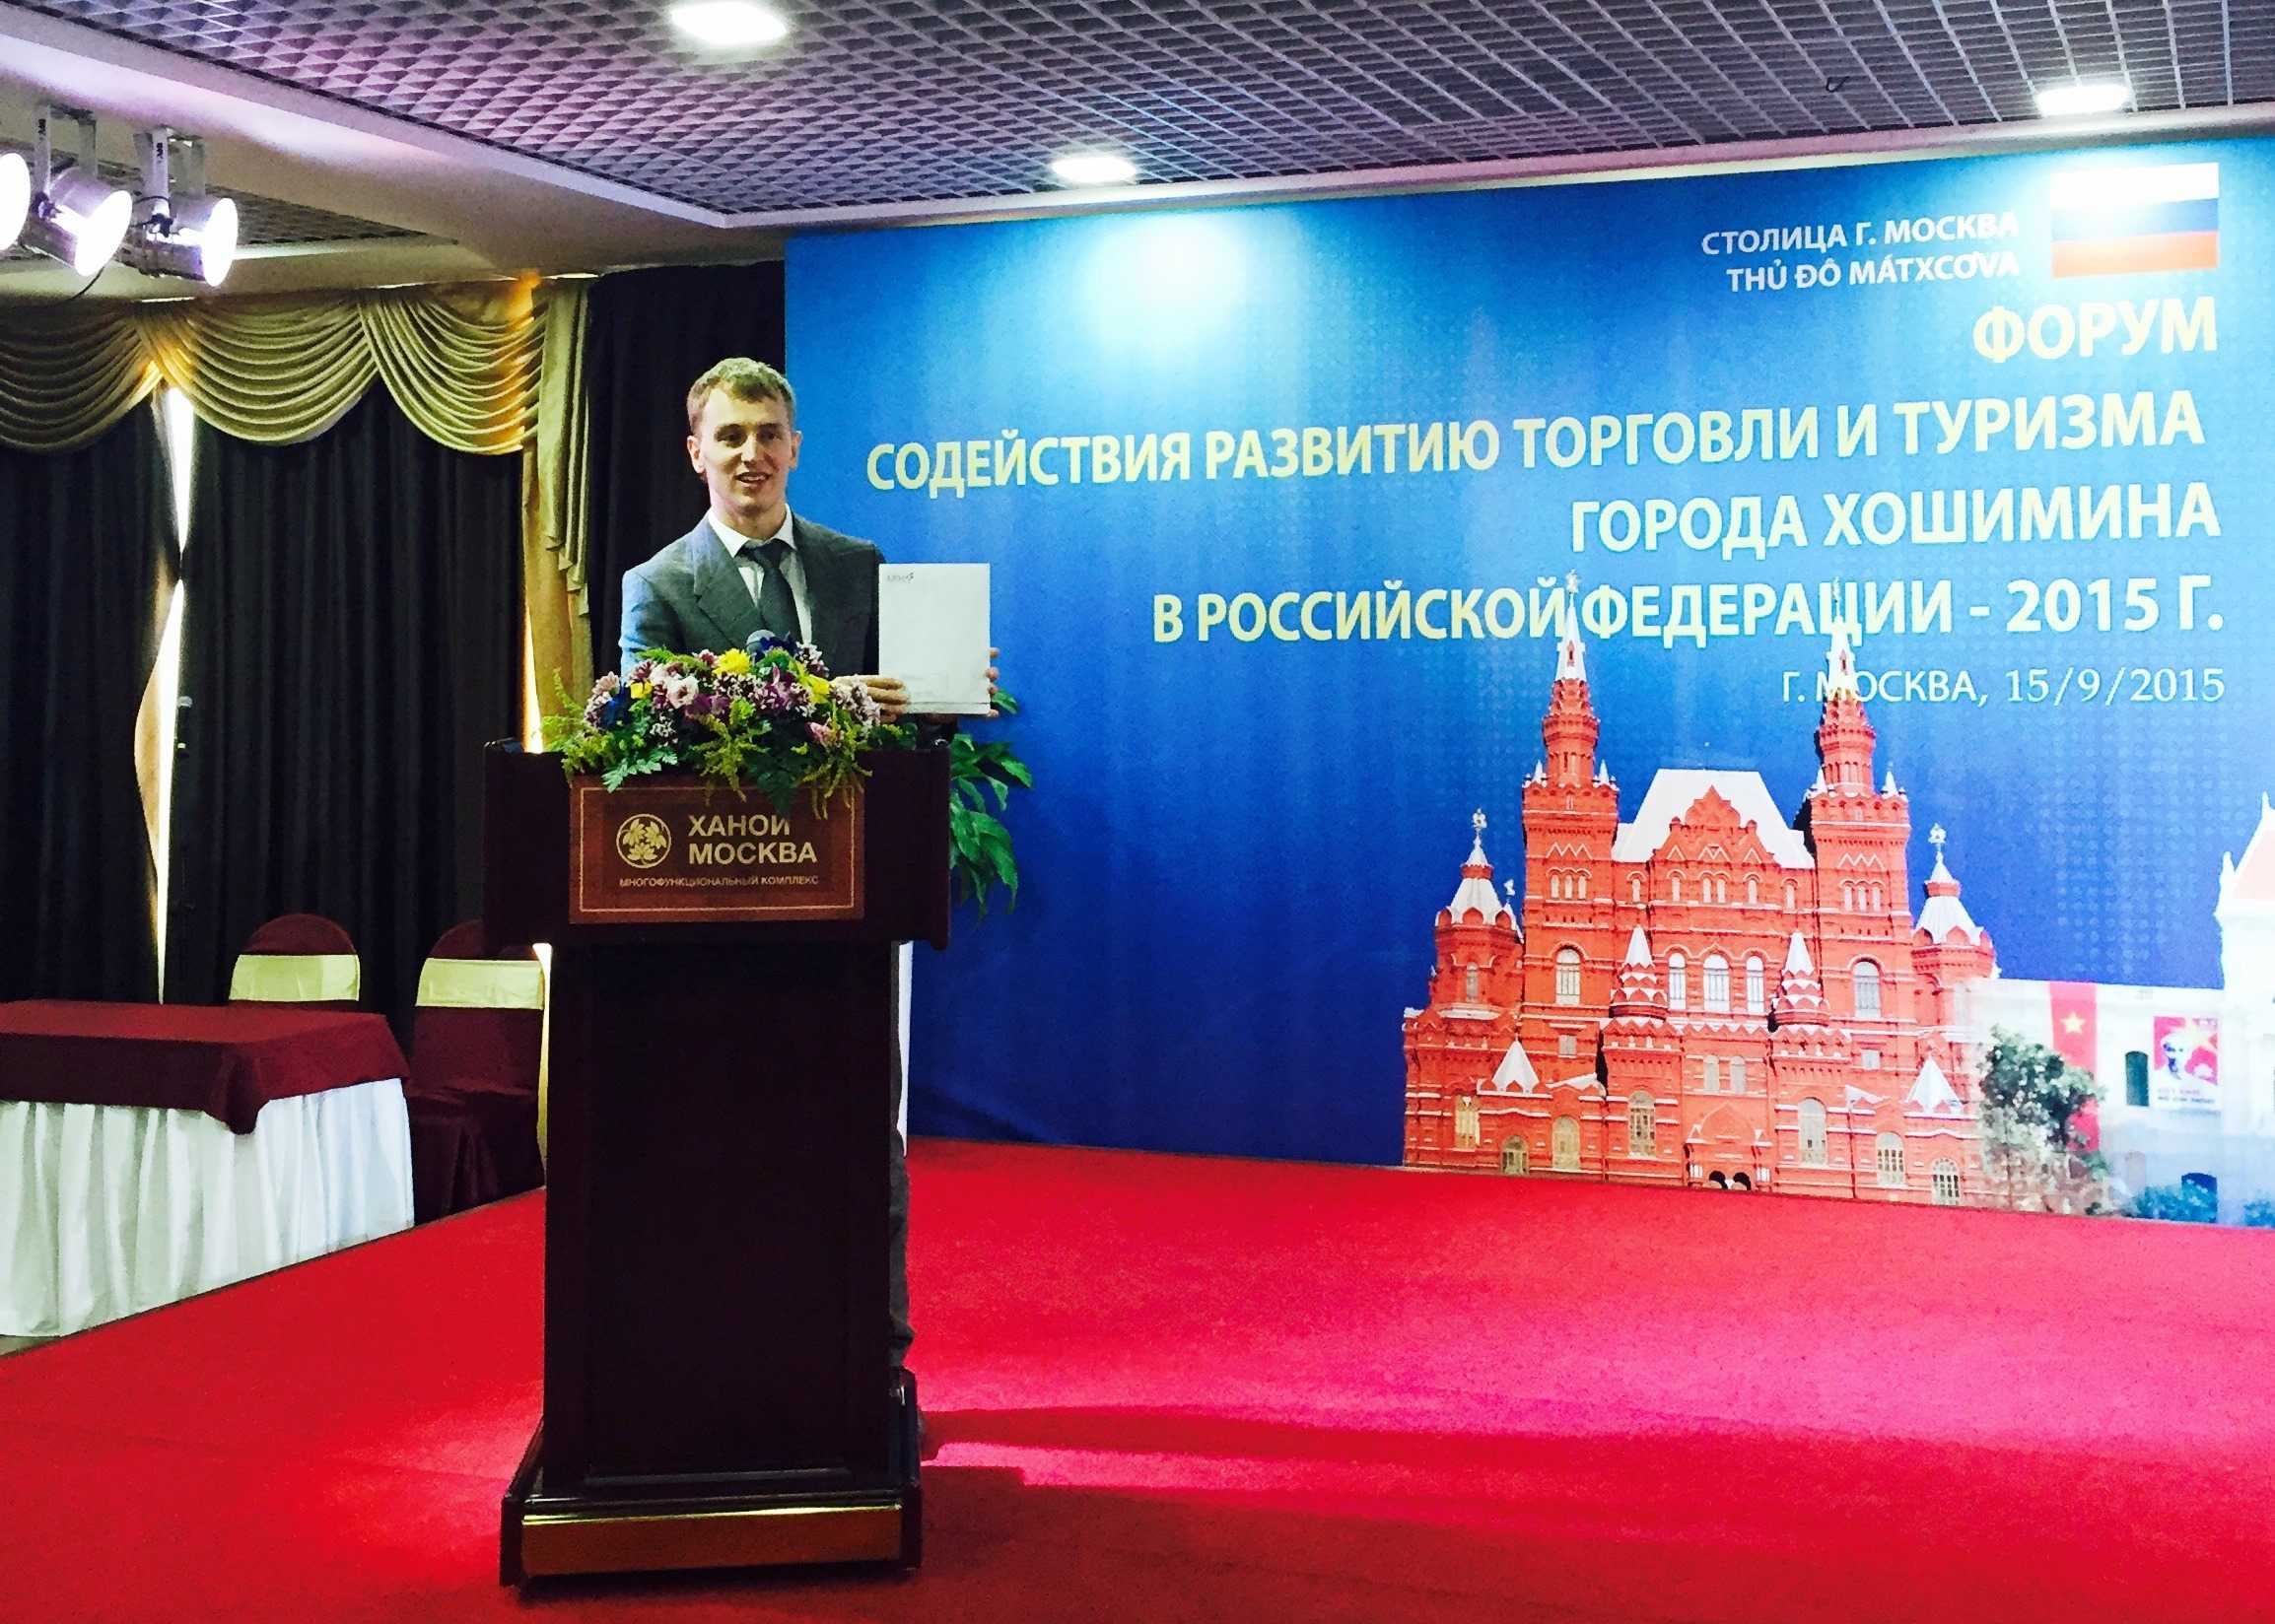 Vadim Tylik`s speech: Development of Cooperation between Vietnam and Russia, pic. 3